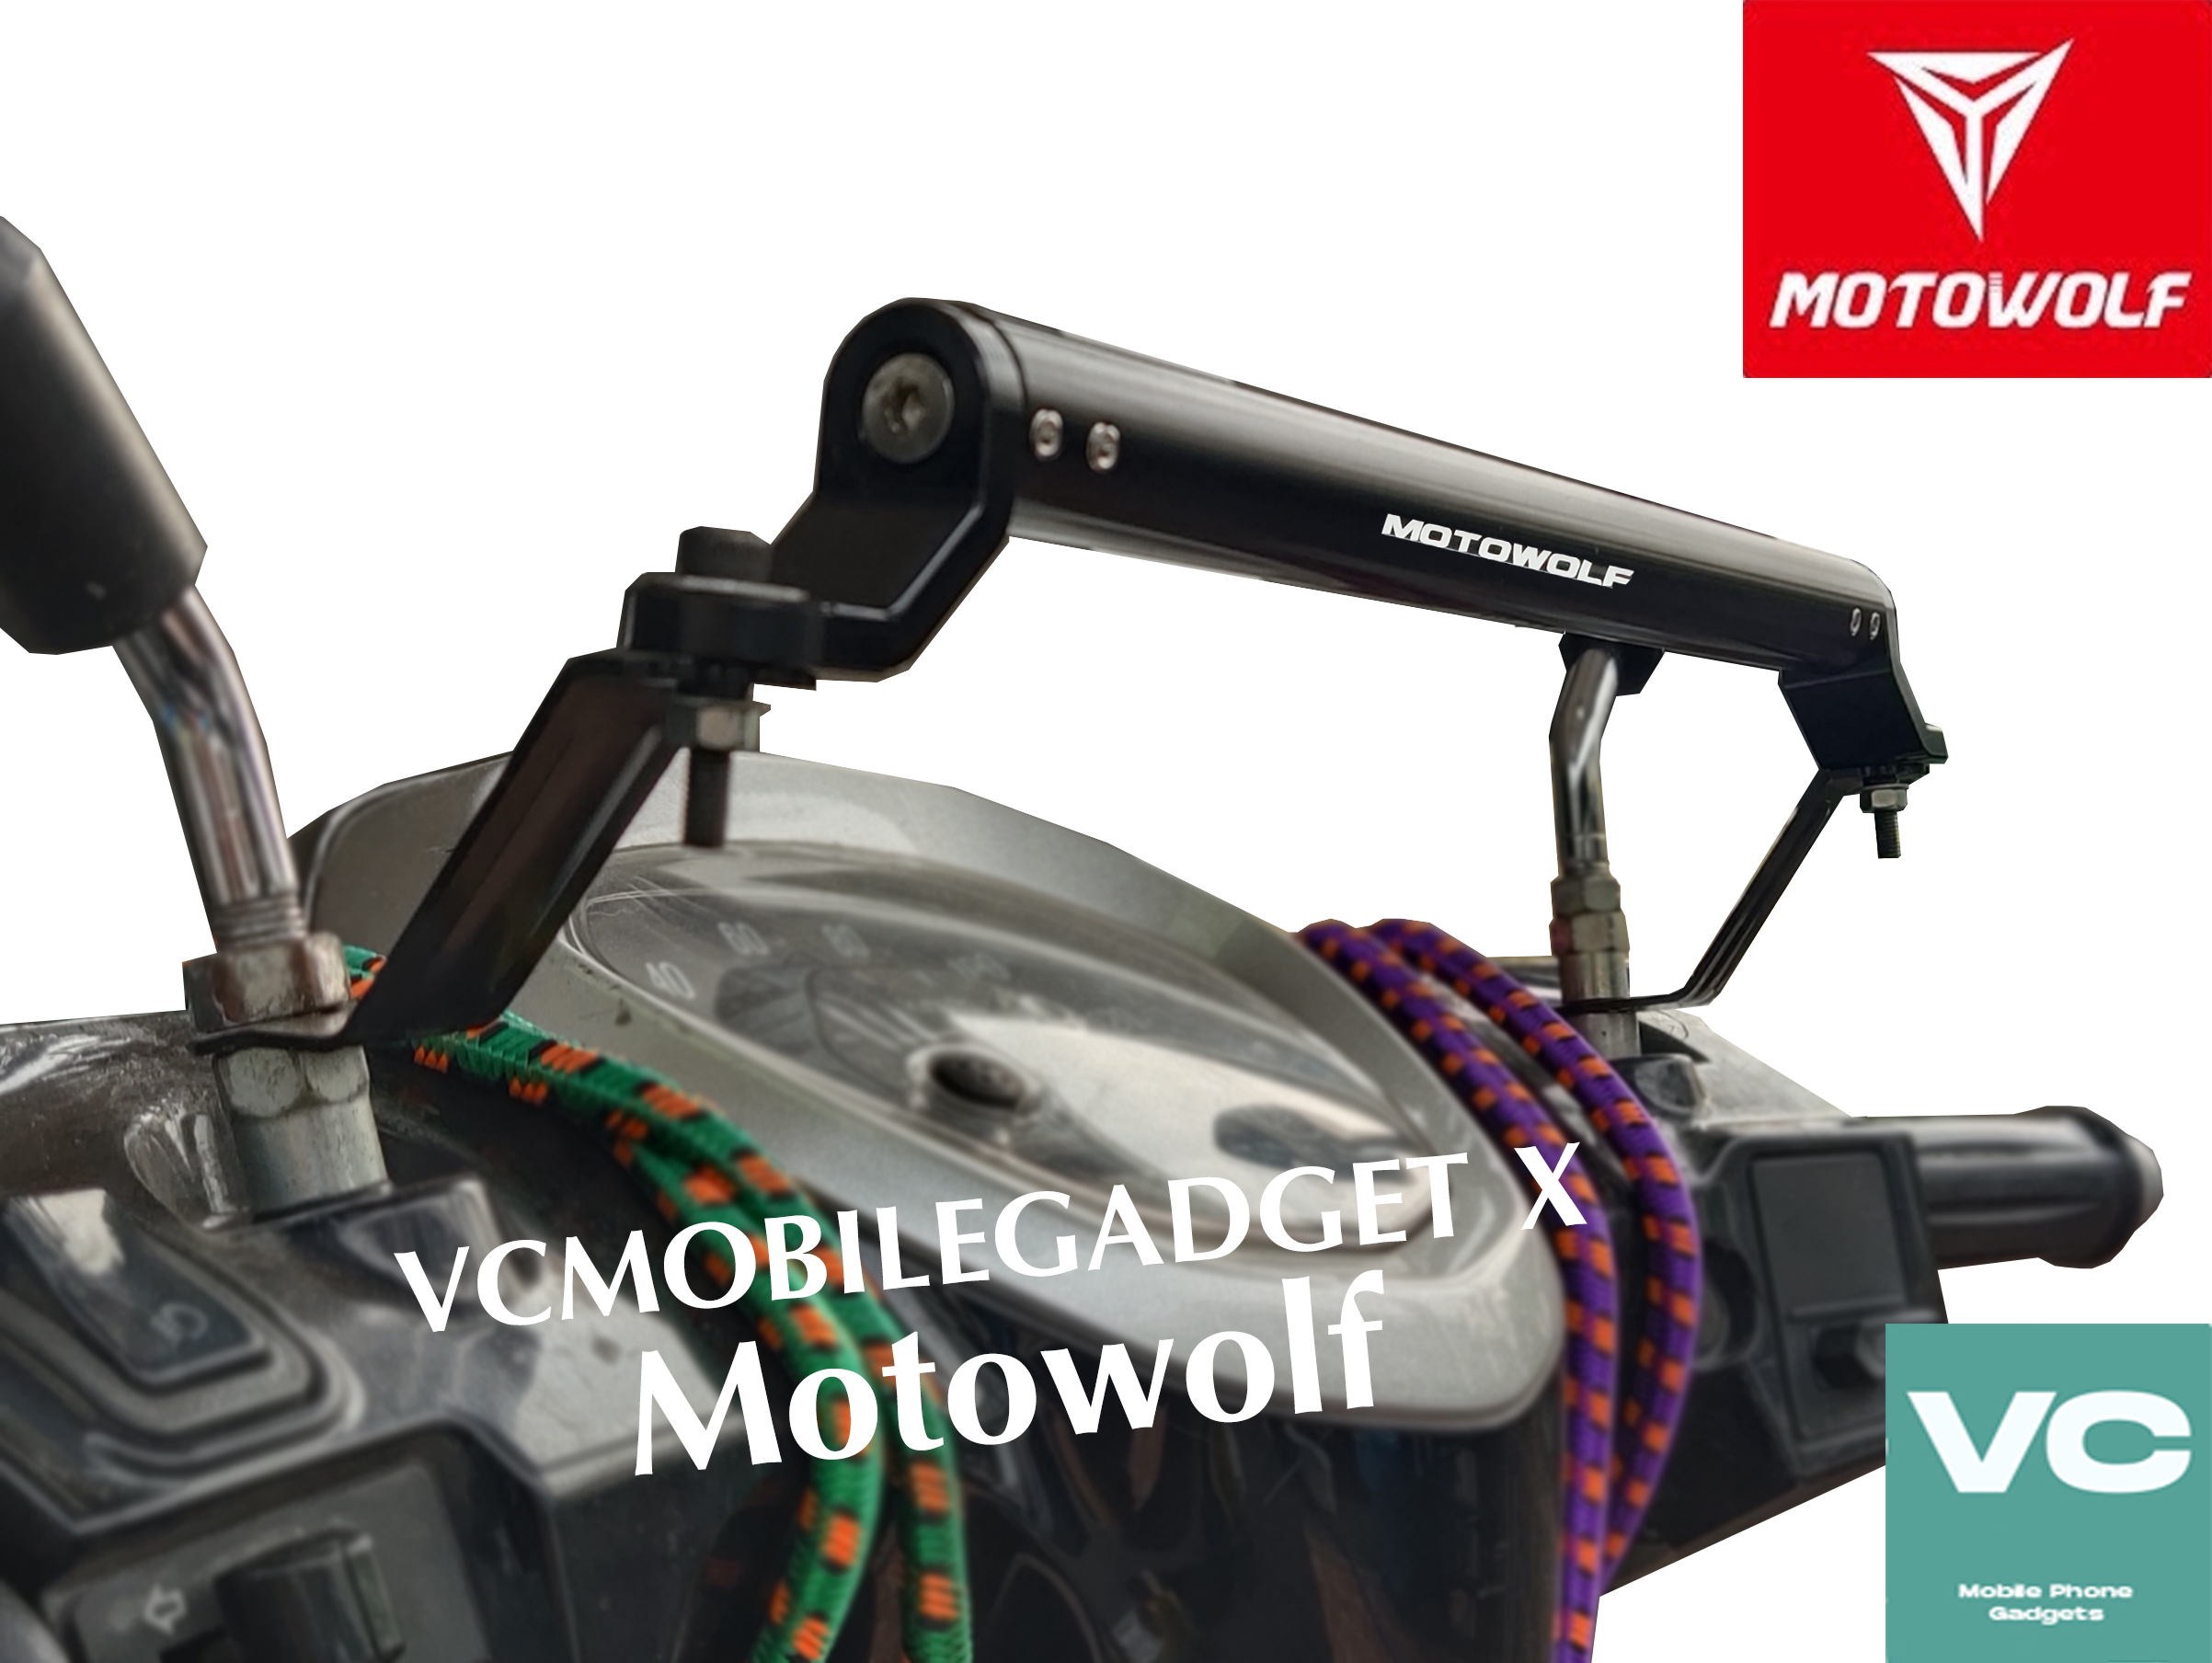 บาร์มอเตอร์ไซค์  Motowolf (แถมฟรี ประแจหกเหลี่ยม, อะไหล่น็อต 2 ตัว) บาร์เสริม Motowolf MDL 3514 ทำจากเหล้ก